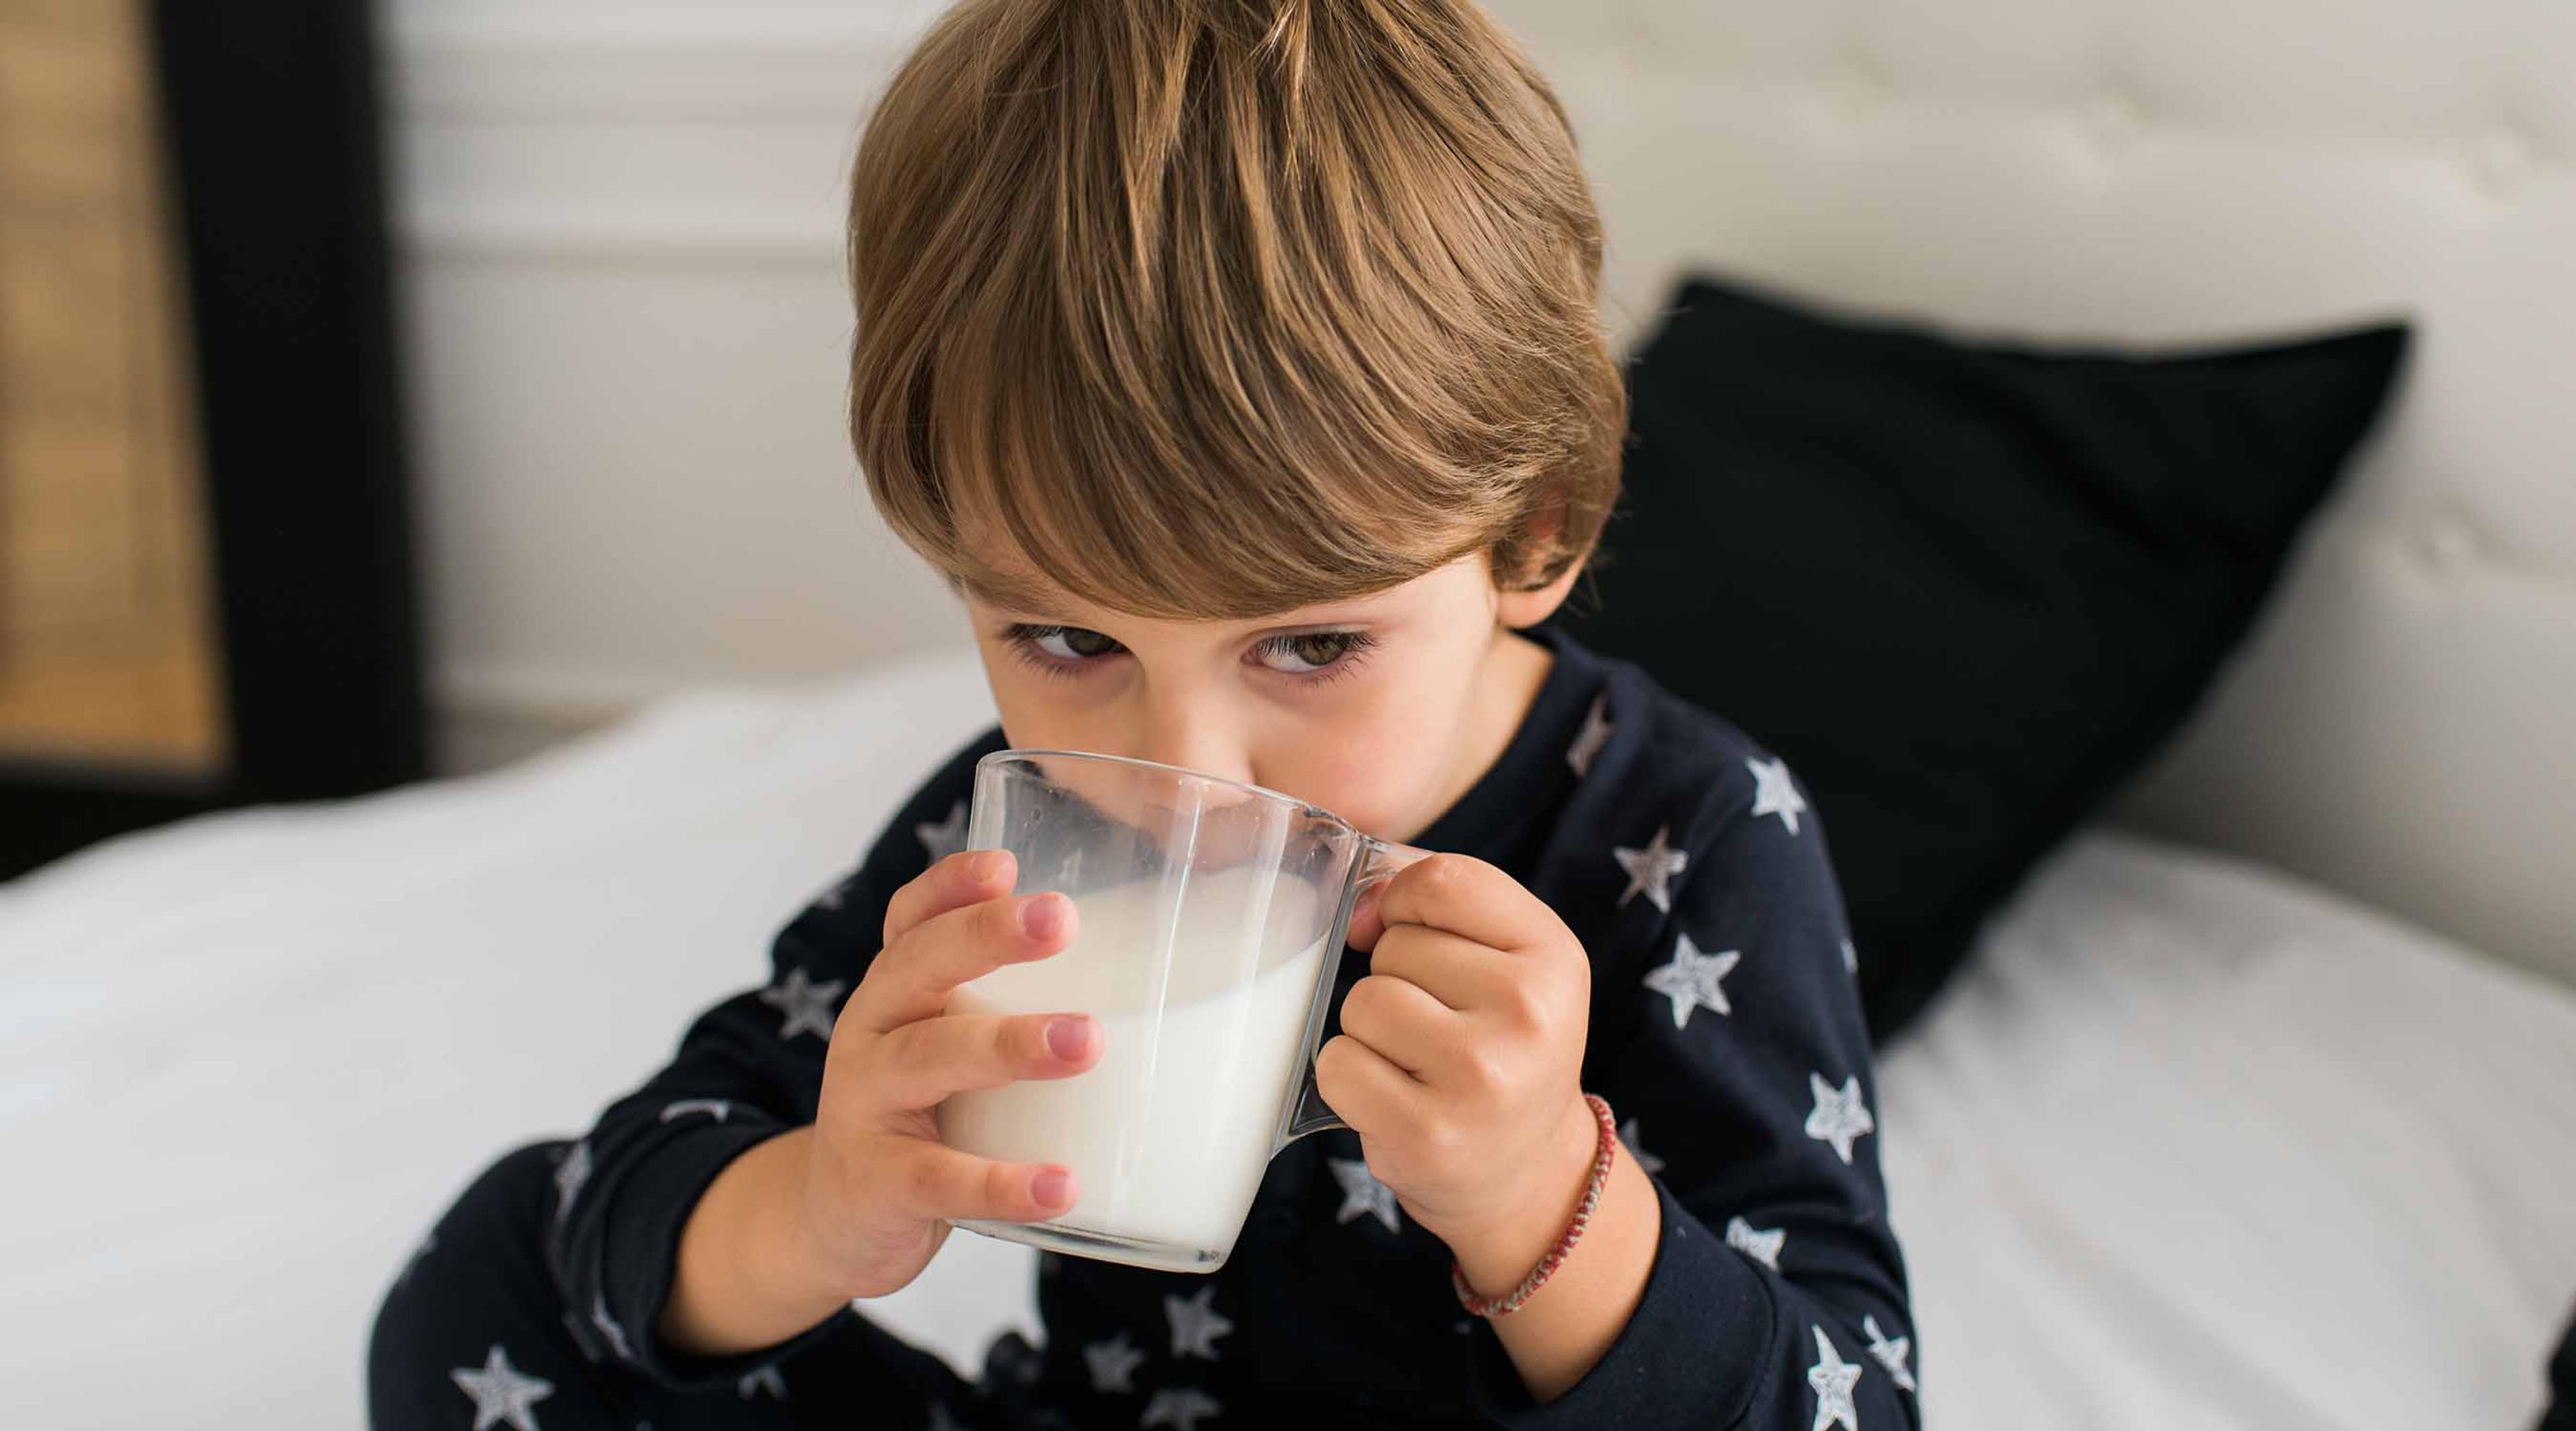 A boy drinks milk in bed.